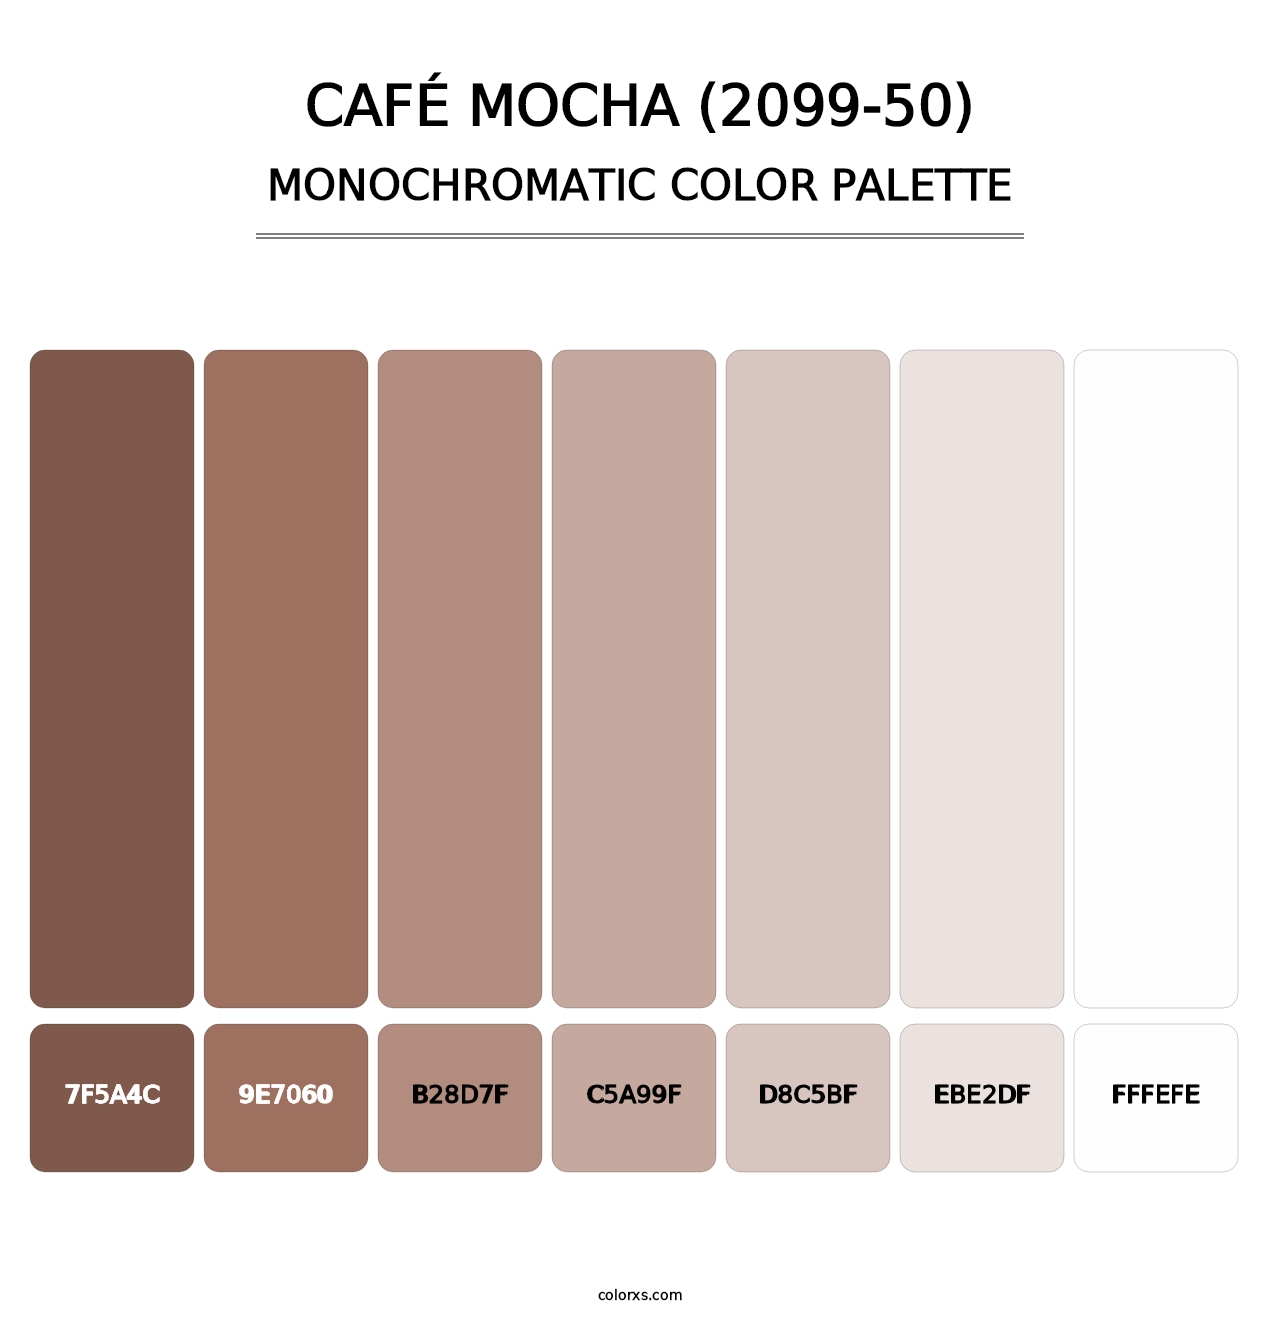 Café Mocha (2099-50) - Monochromatic Color Palette